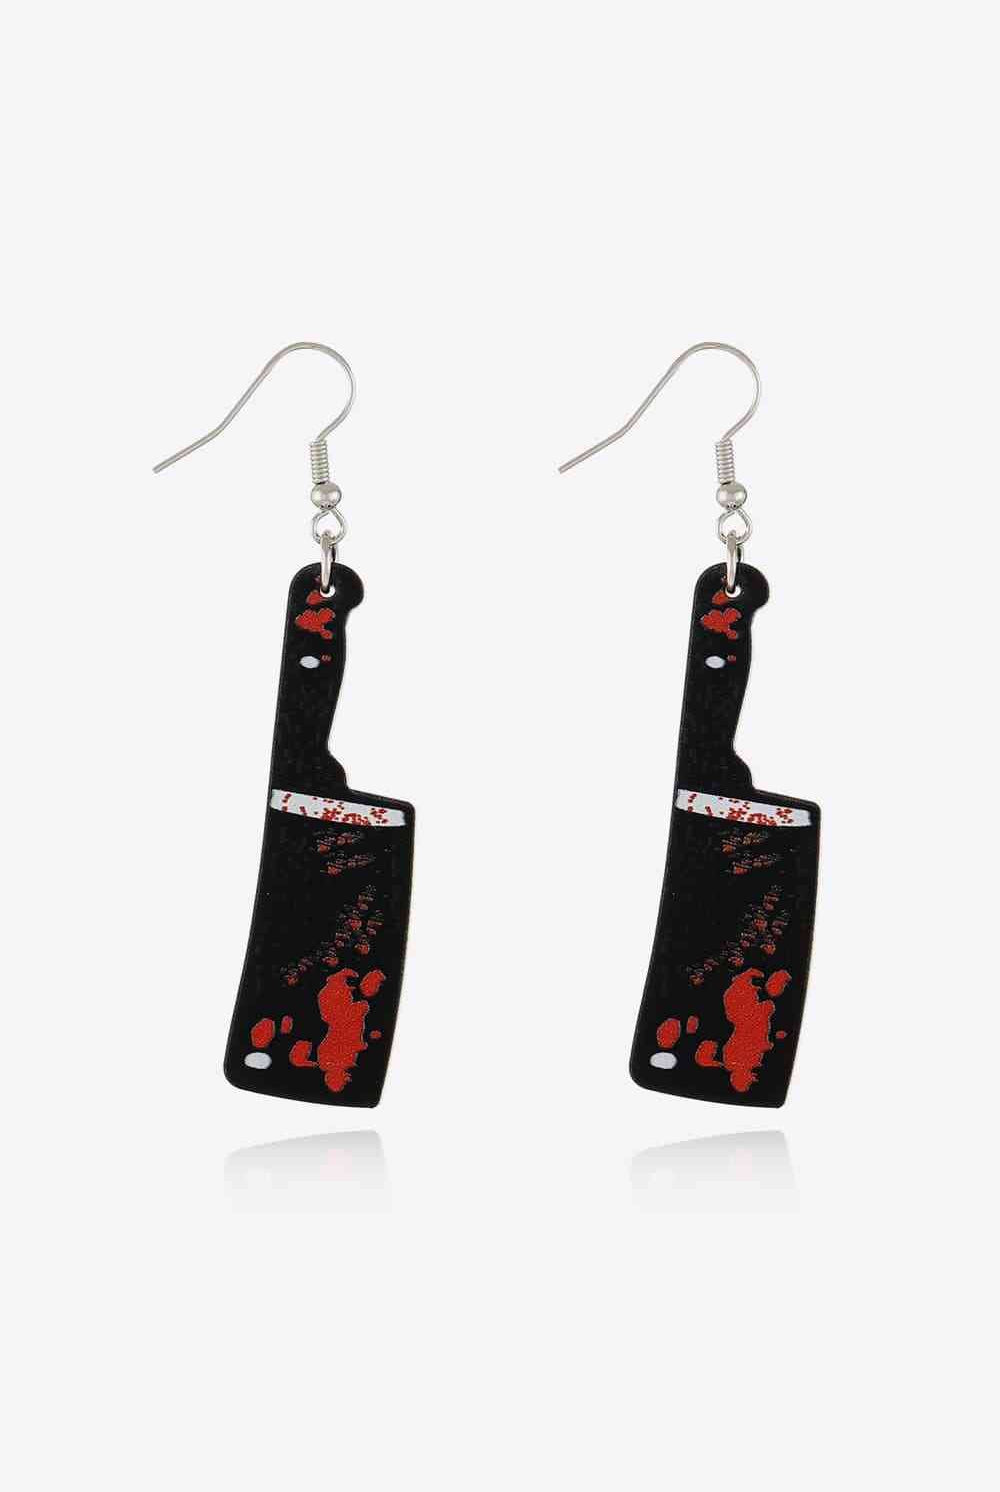 Bloody Horror Drop Earrings - GemThreads Boutique Bloody Horror Drop Earrings